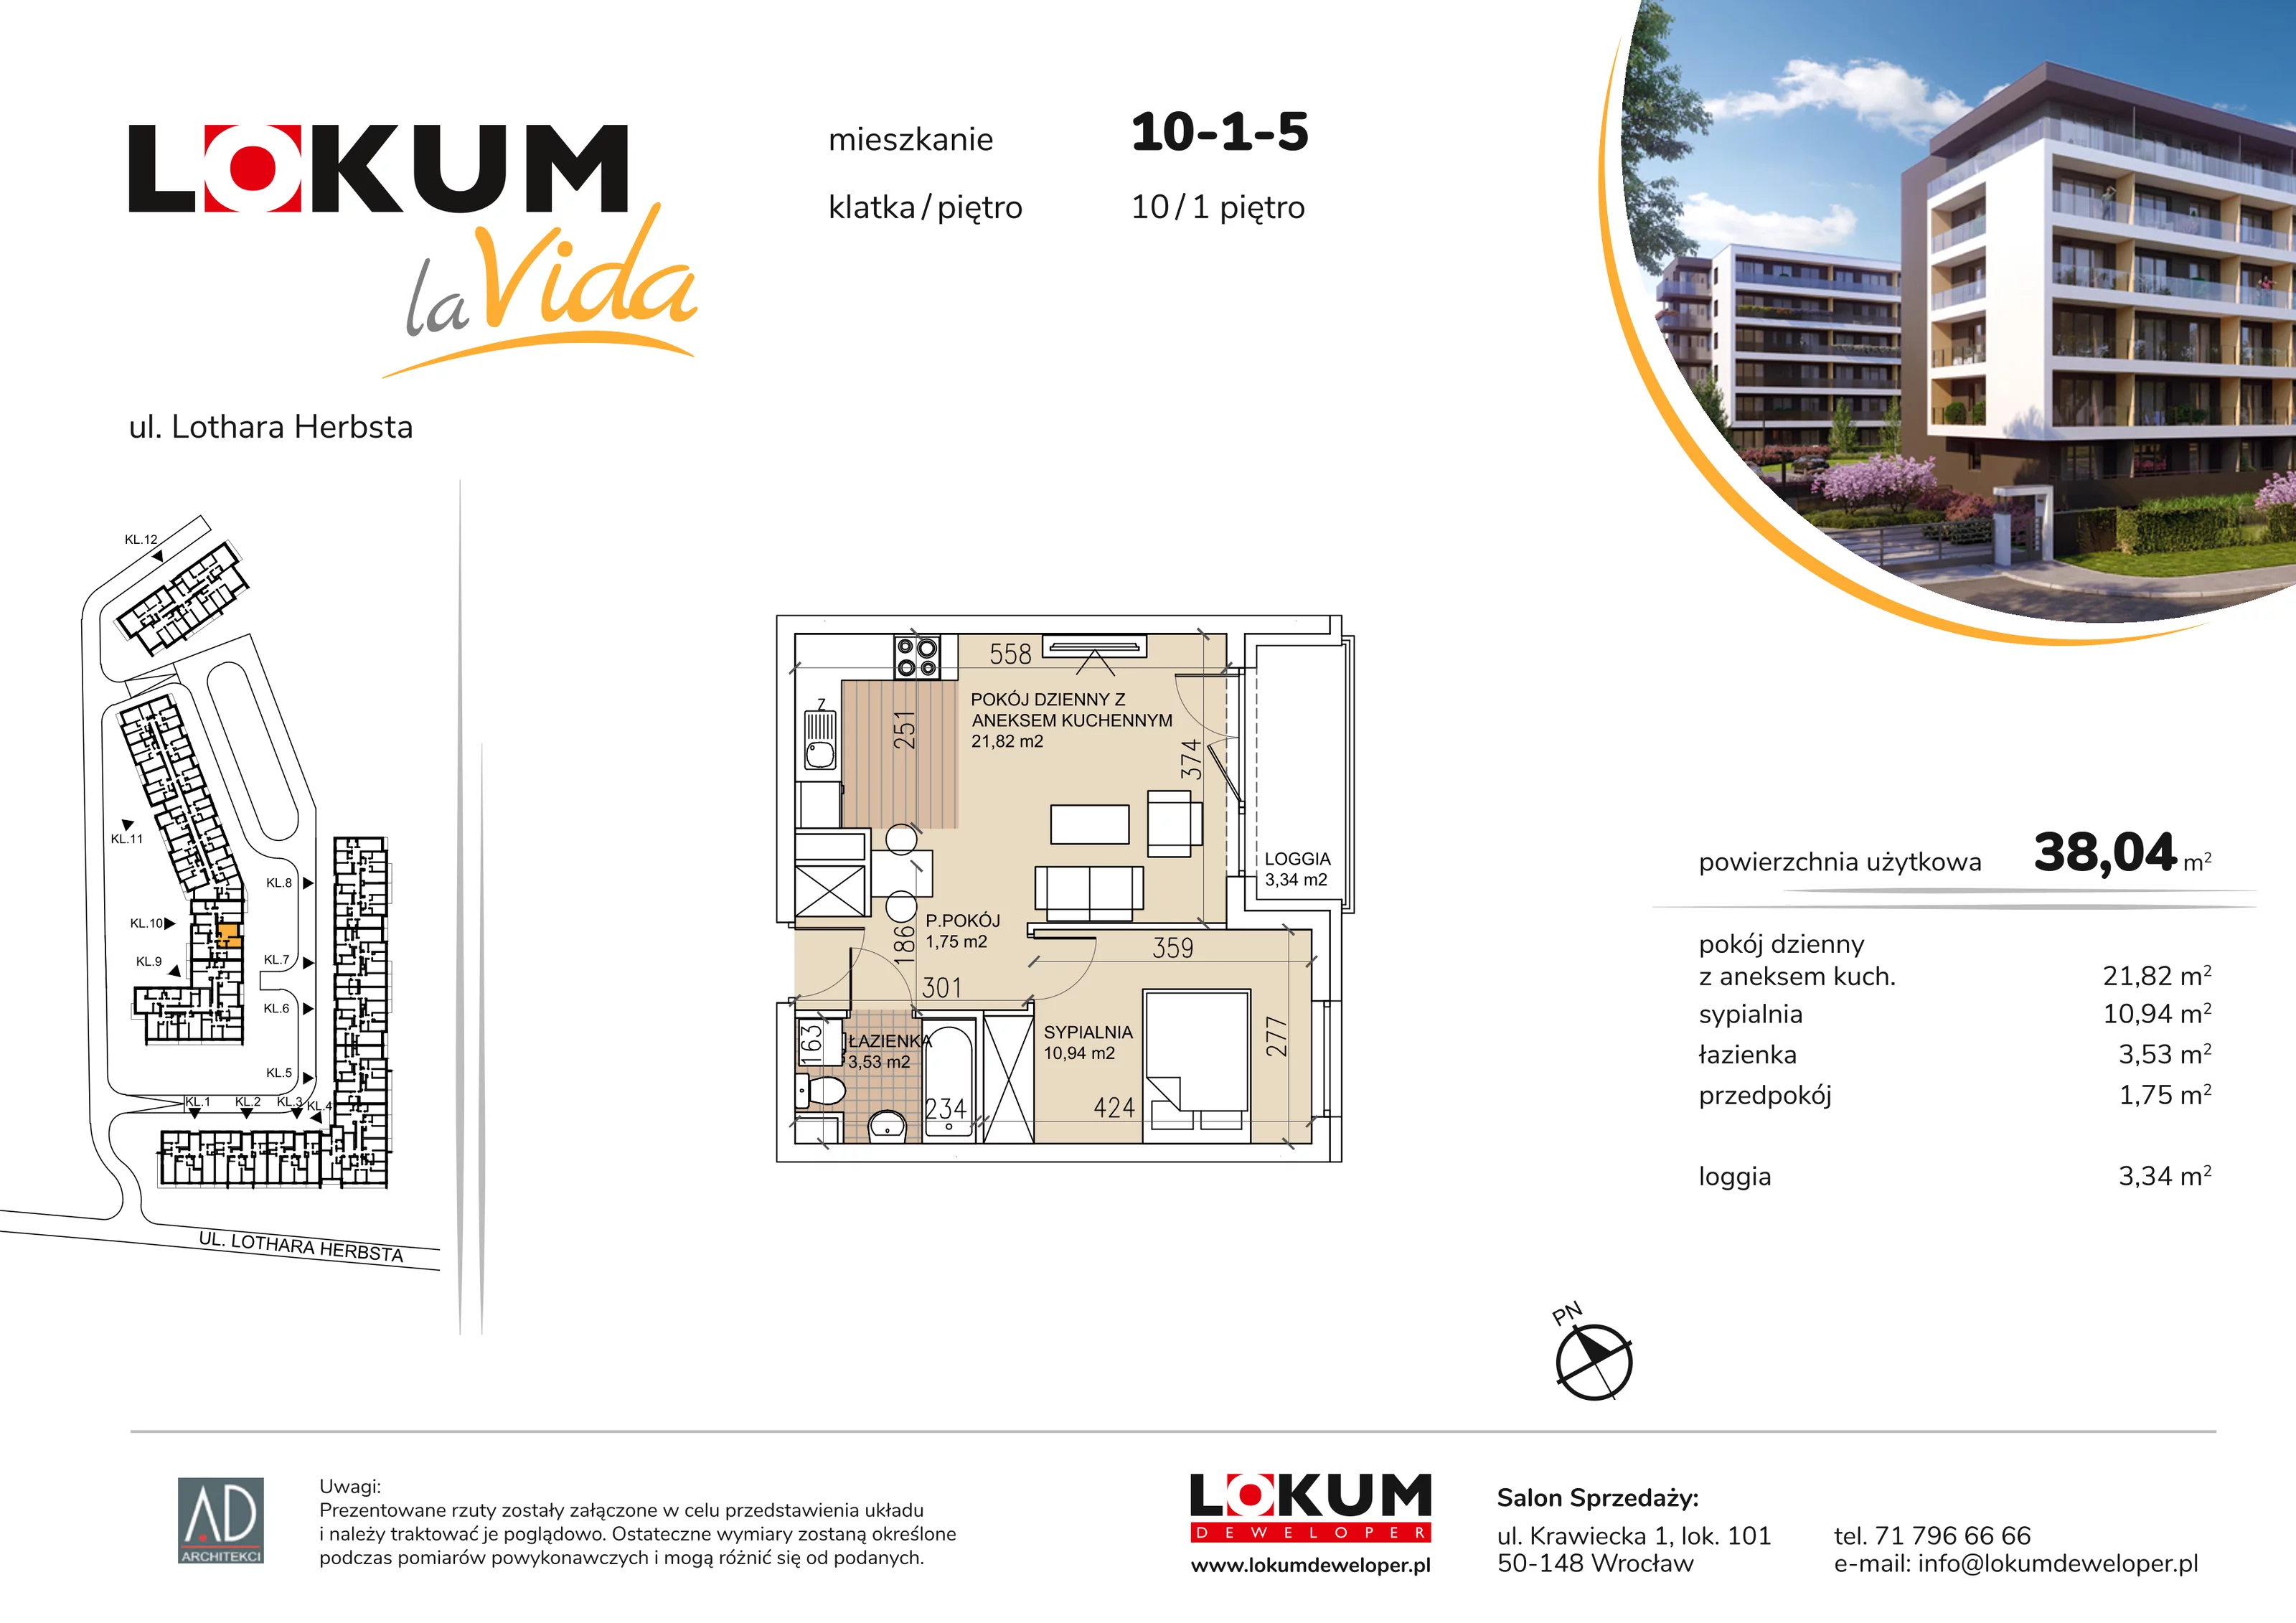 Mieszkanie 38,04 m², piętro 1, oferta nr 10-1-5, Lokum la Vida, Wrocław, Sołtysowice, ul. Lothara Herbsta